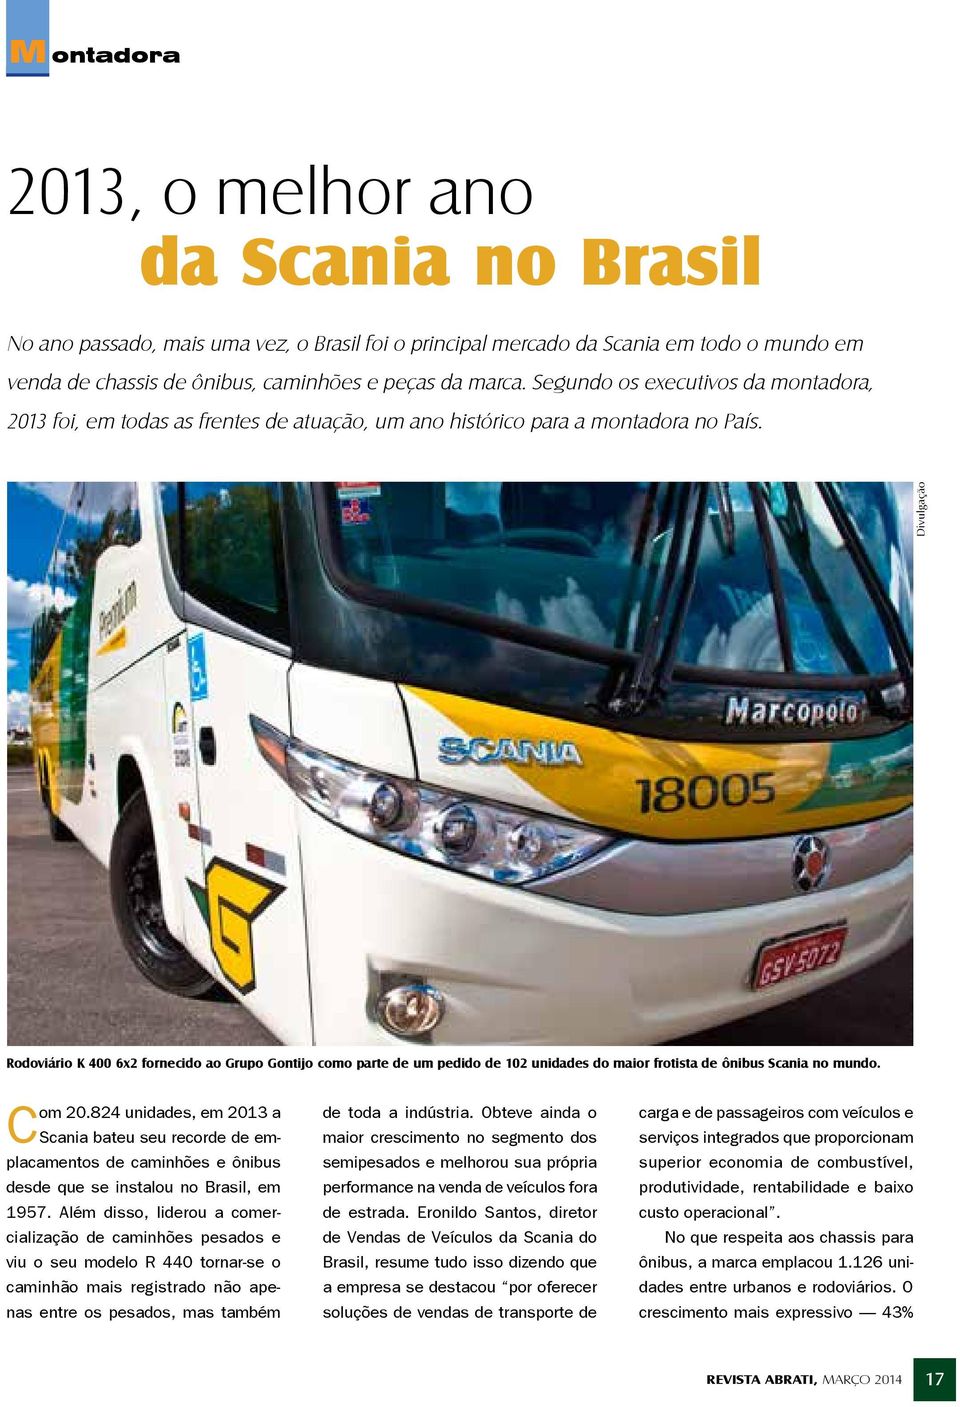 Divulgação Rodoviário K 400 6x2 fornecido ao Grupo Gontijo como parte de um pedido de 102 unidades do maior frotista de ônibus Scania no mundo. Com 20.